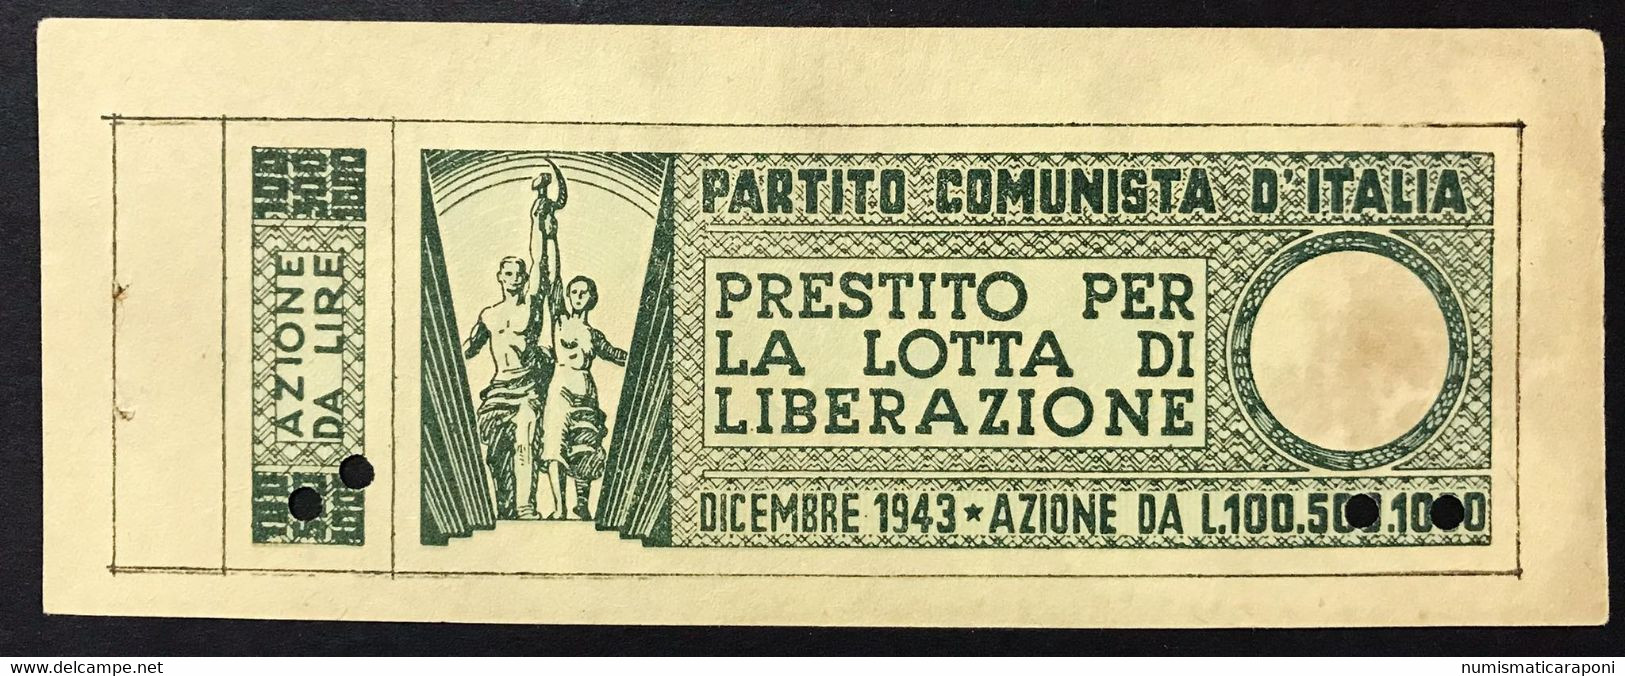 100 LIRE PARTITO COMUNISTA D'ITALIA LOTTA DI LIBERAZIONE DICEMBRE 1943 Lotto 4166 - Occupazione Alleata Seconda Guerra Mondiale